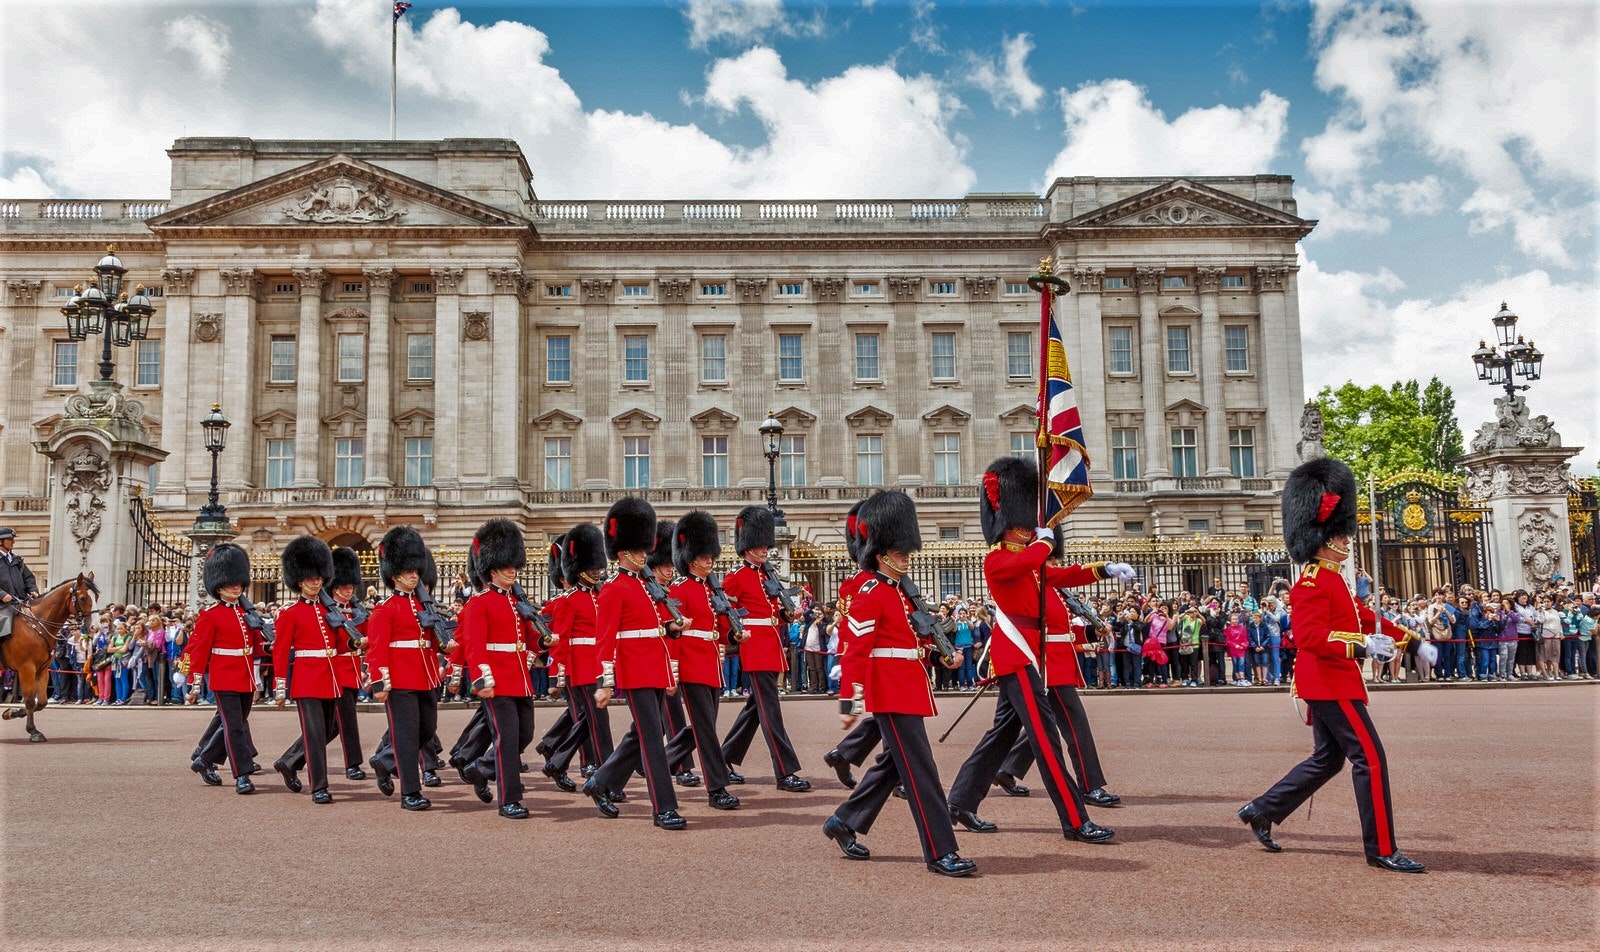 Guards parading outside Buckingham Palace